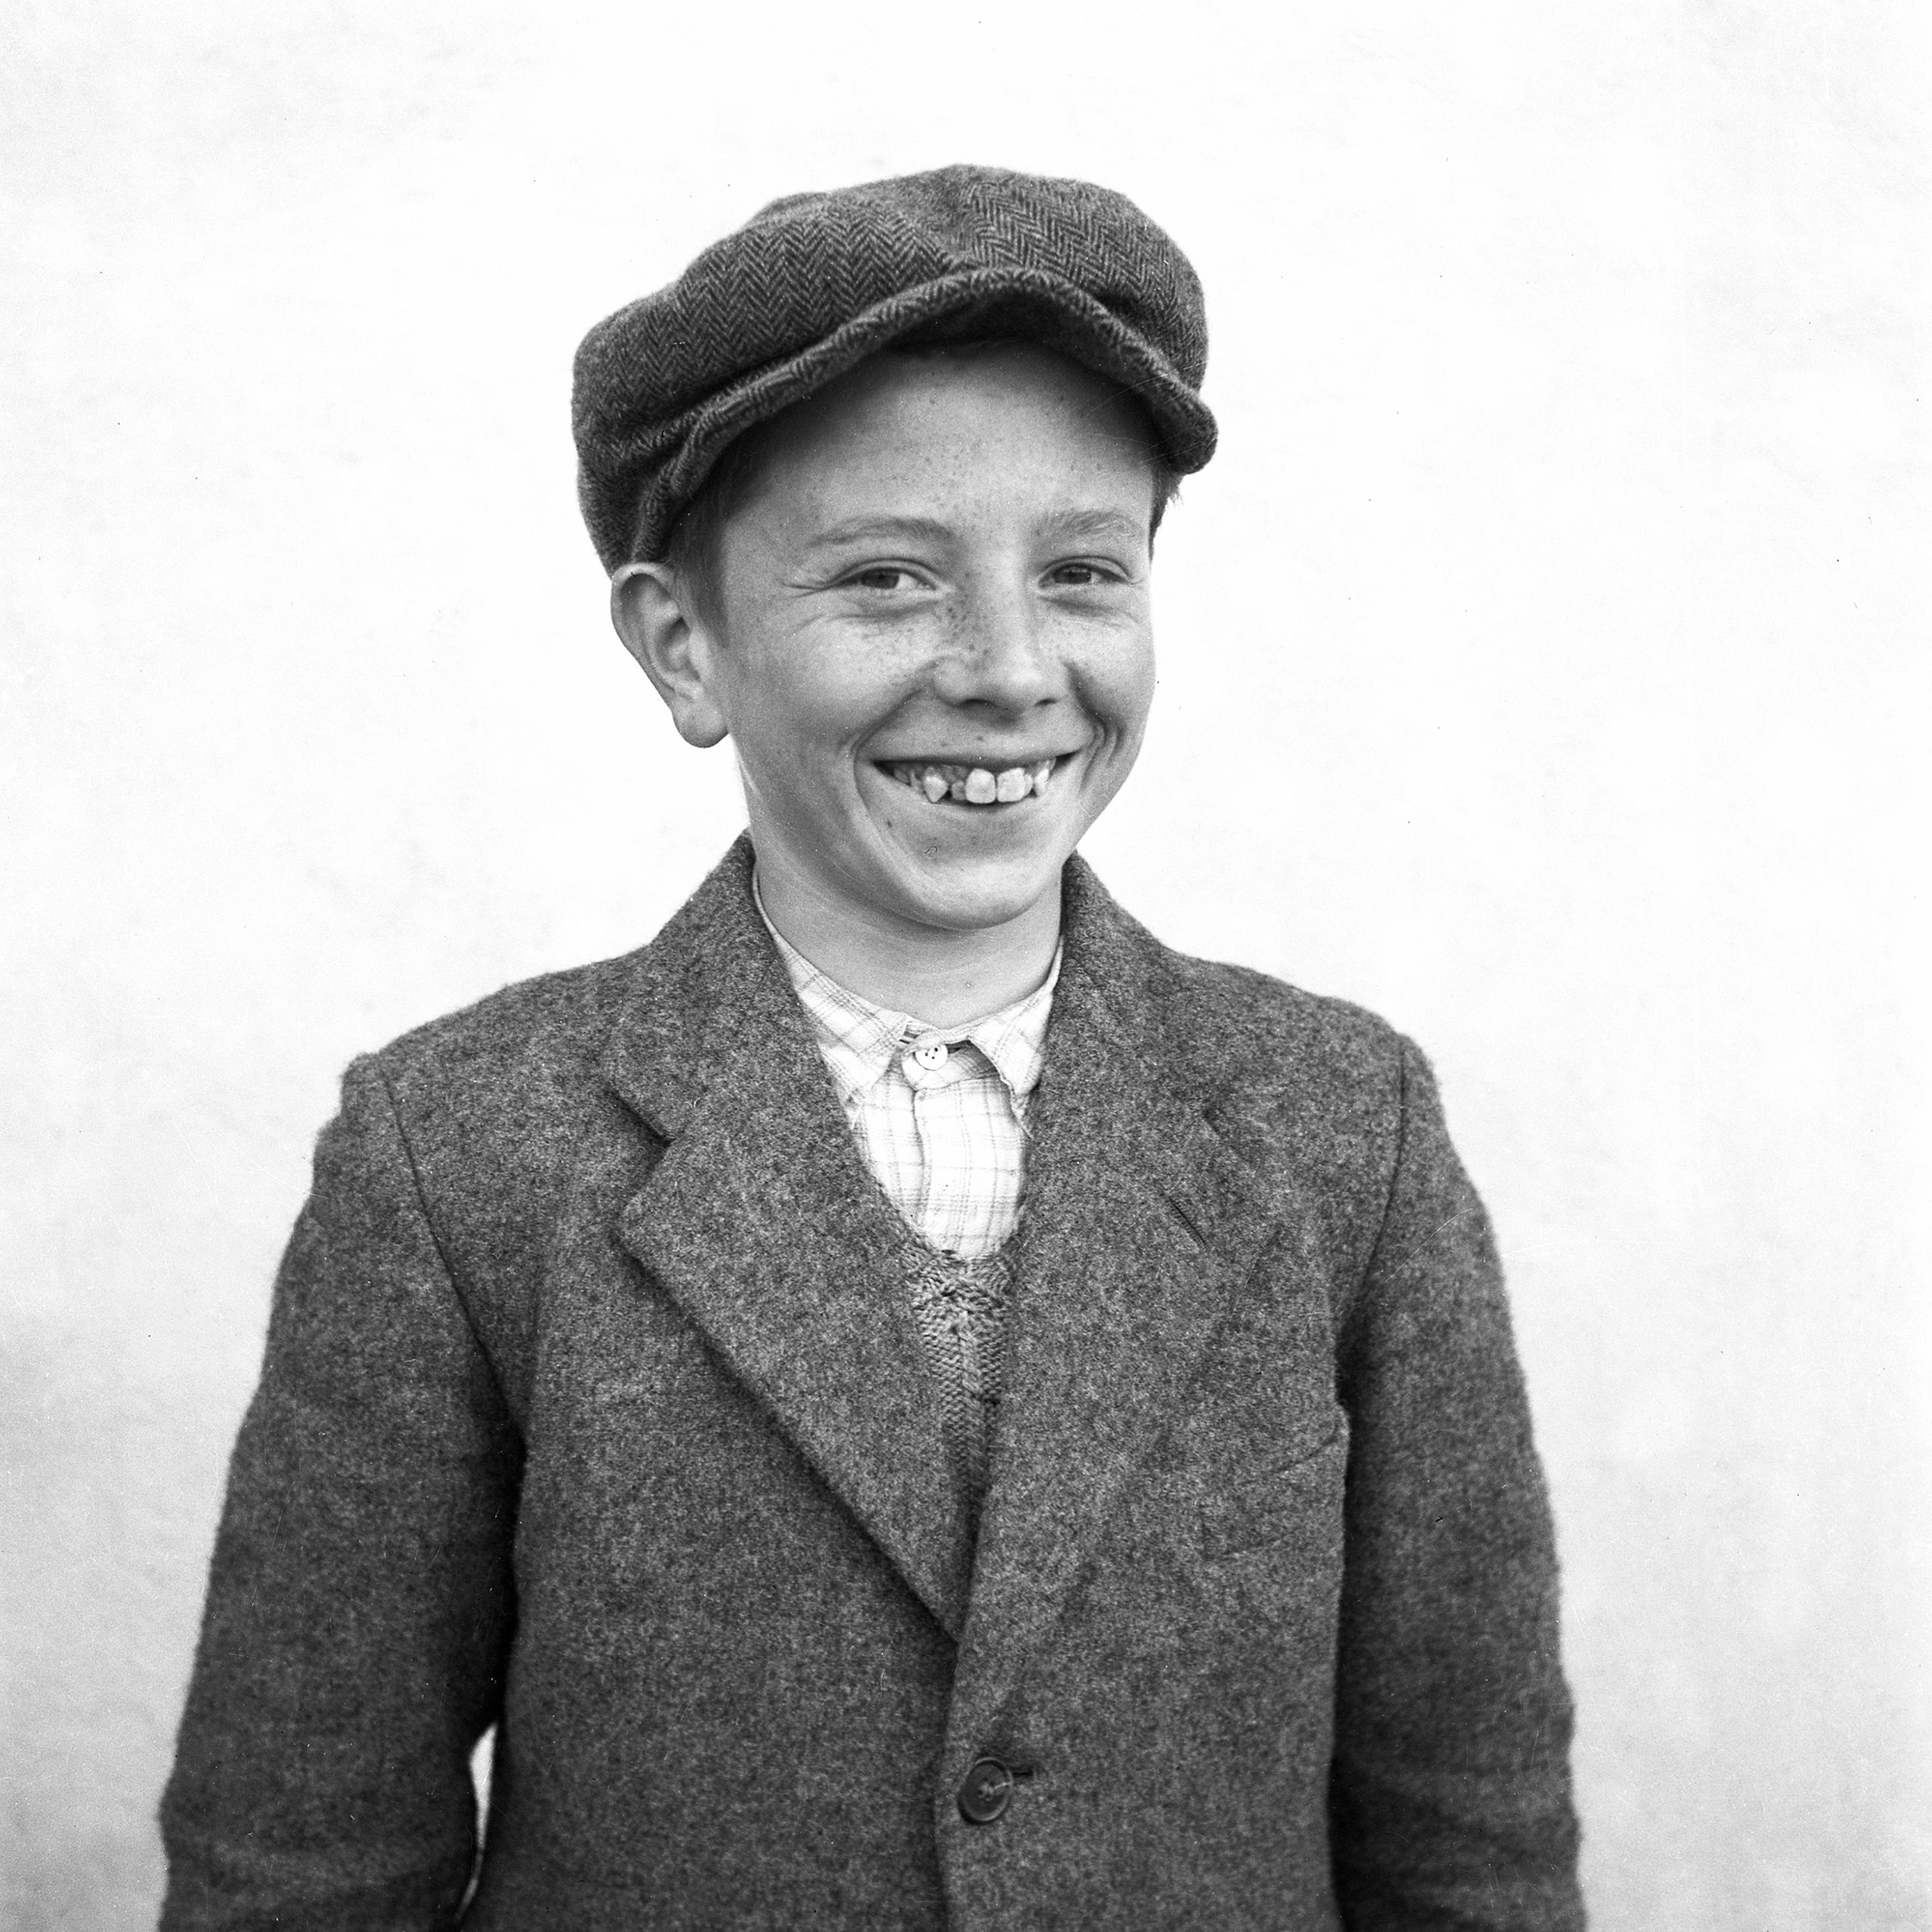 Jeune souriant avec une casquette